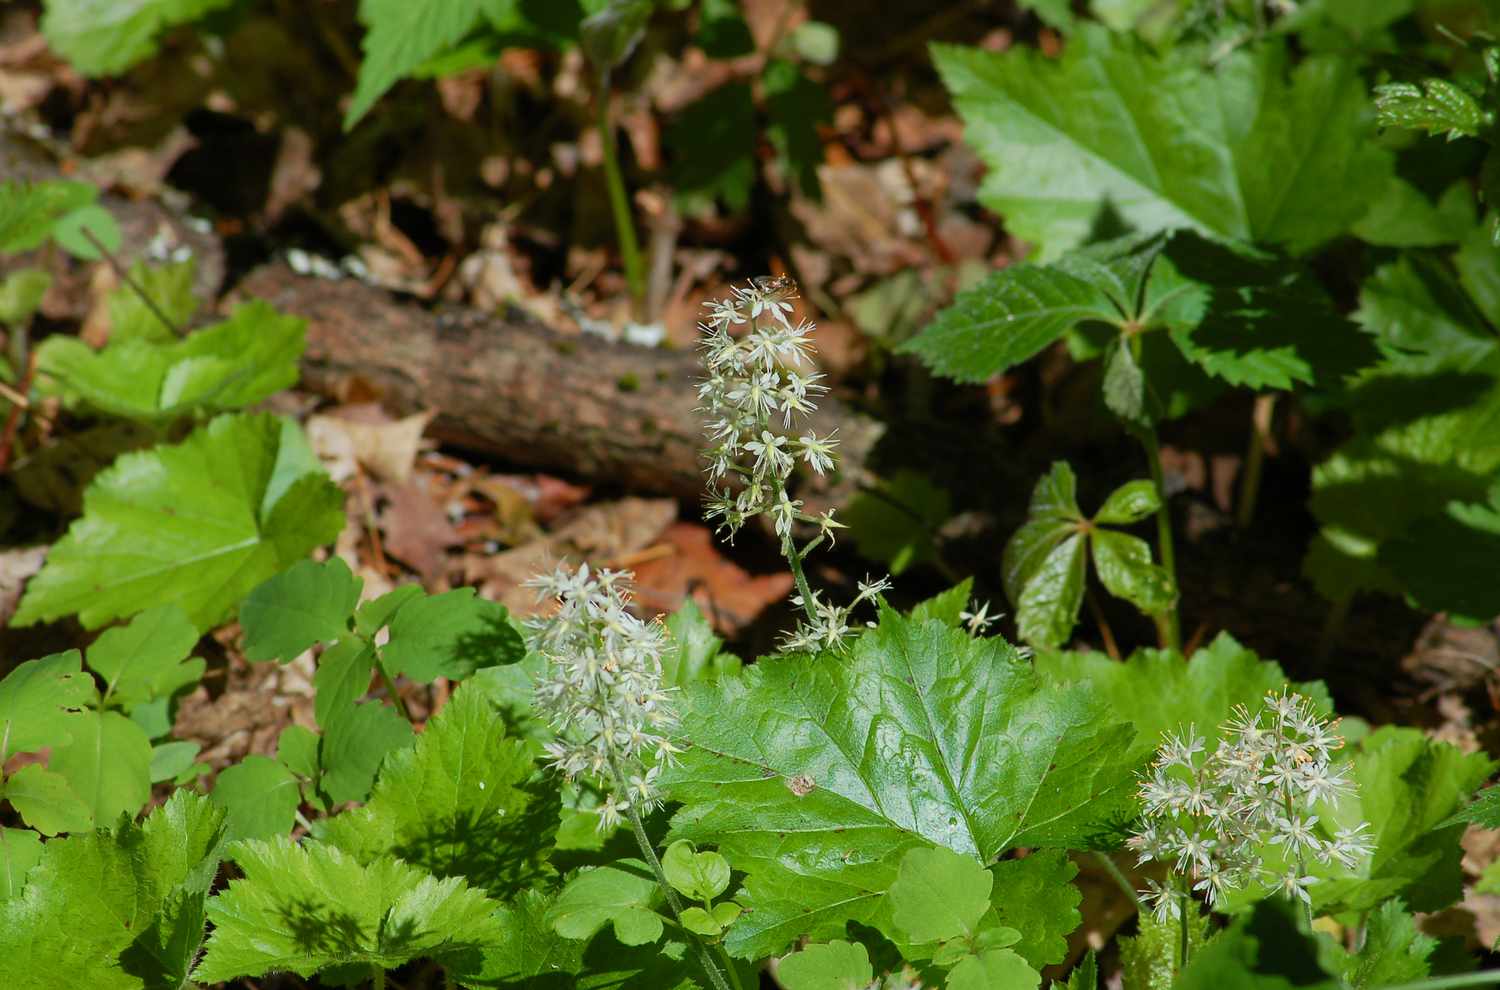 Schaumblüte (Bild) im Frühlingswald von Neuengland.